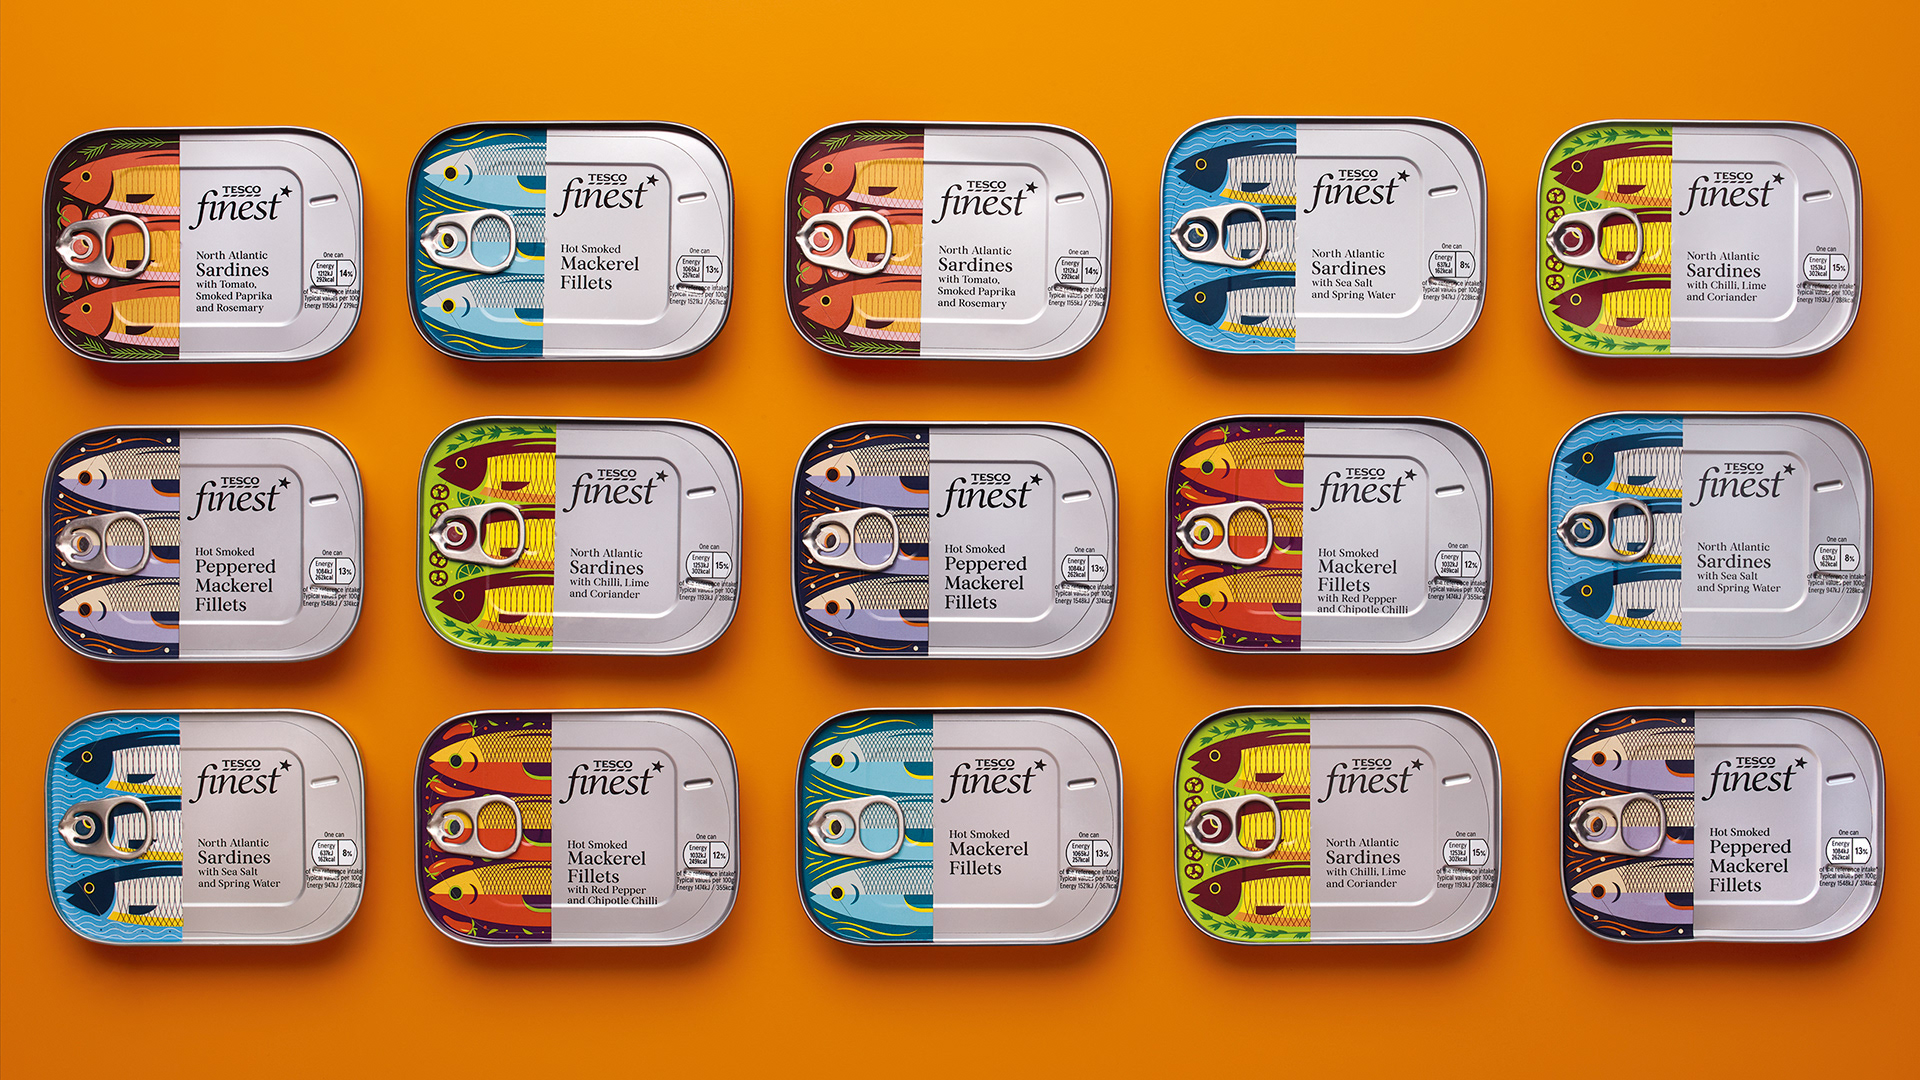 鱼罐头包装设计 鱼罐头包装设计公司哪家好 鱼罐头包装设计公司 第2张